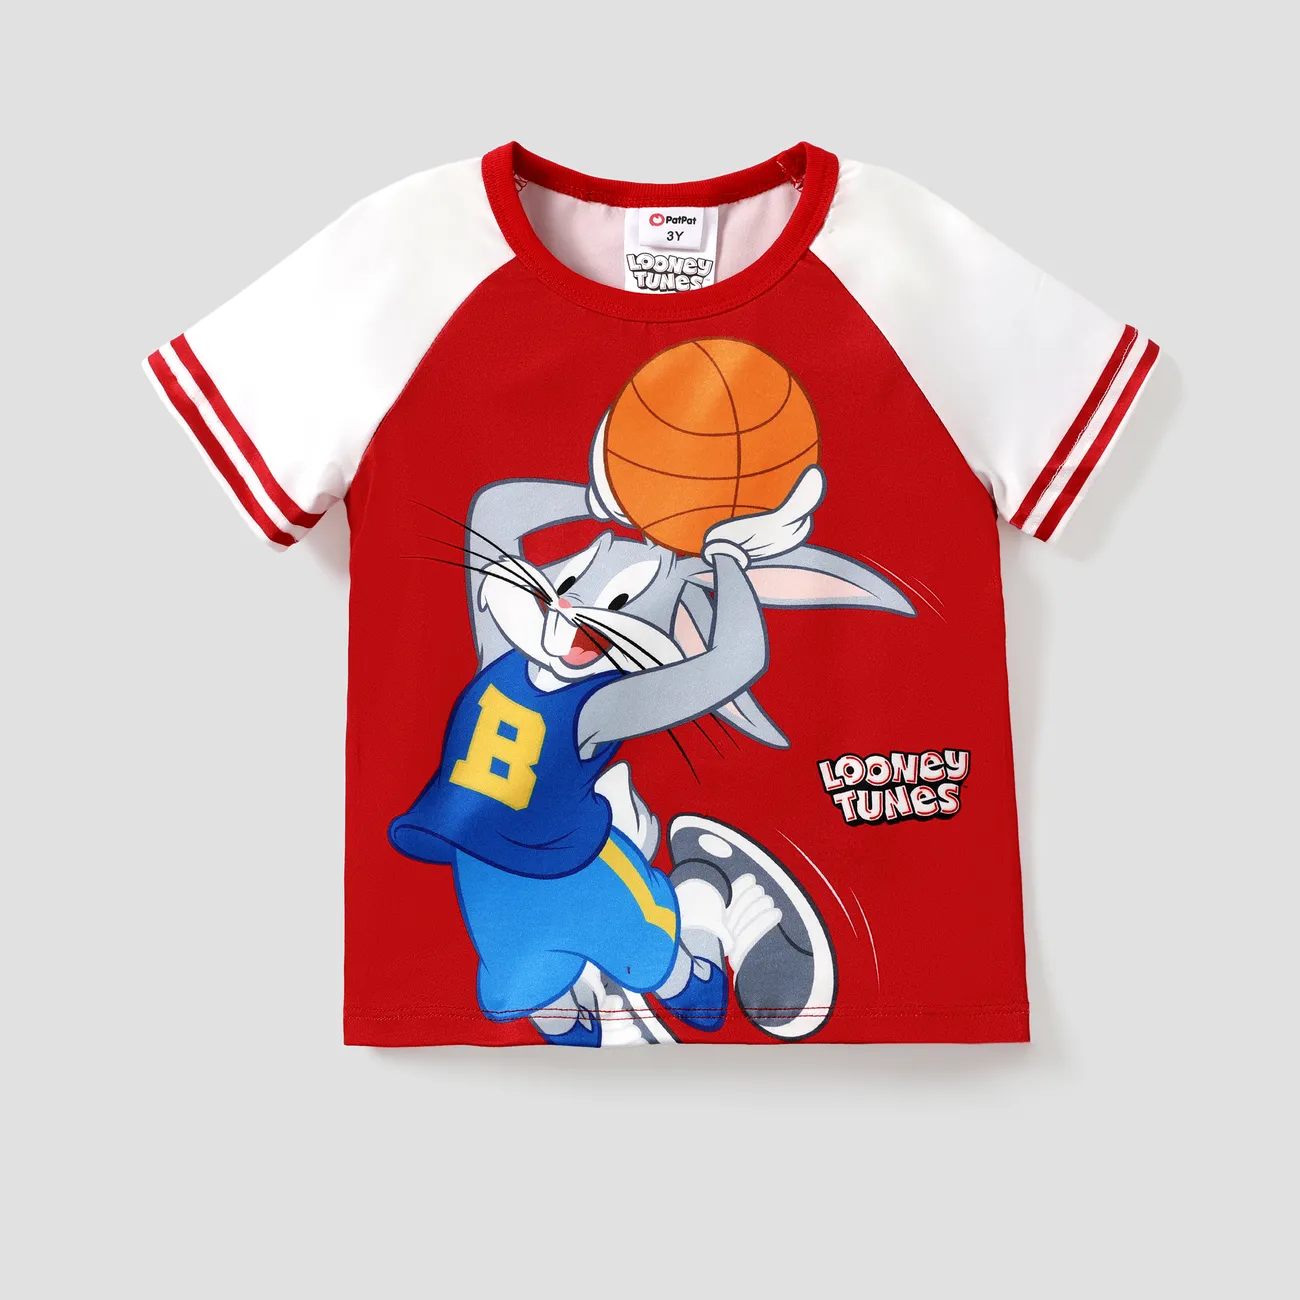 Looney Tunes Pasqua Unisex Infantile Maglietta rosso bianco big image 1